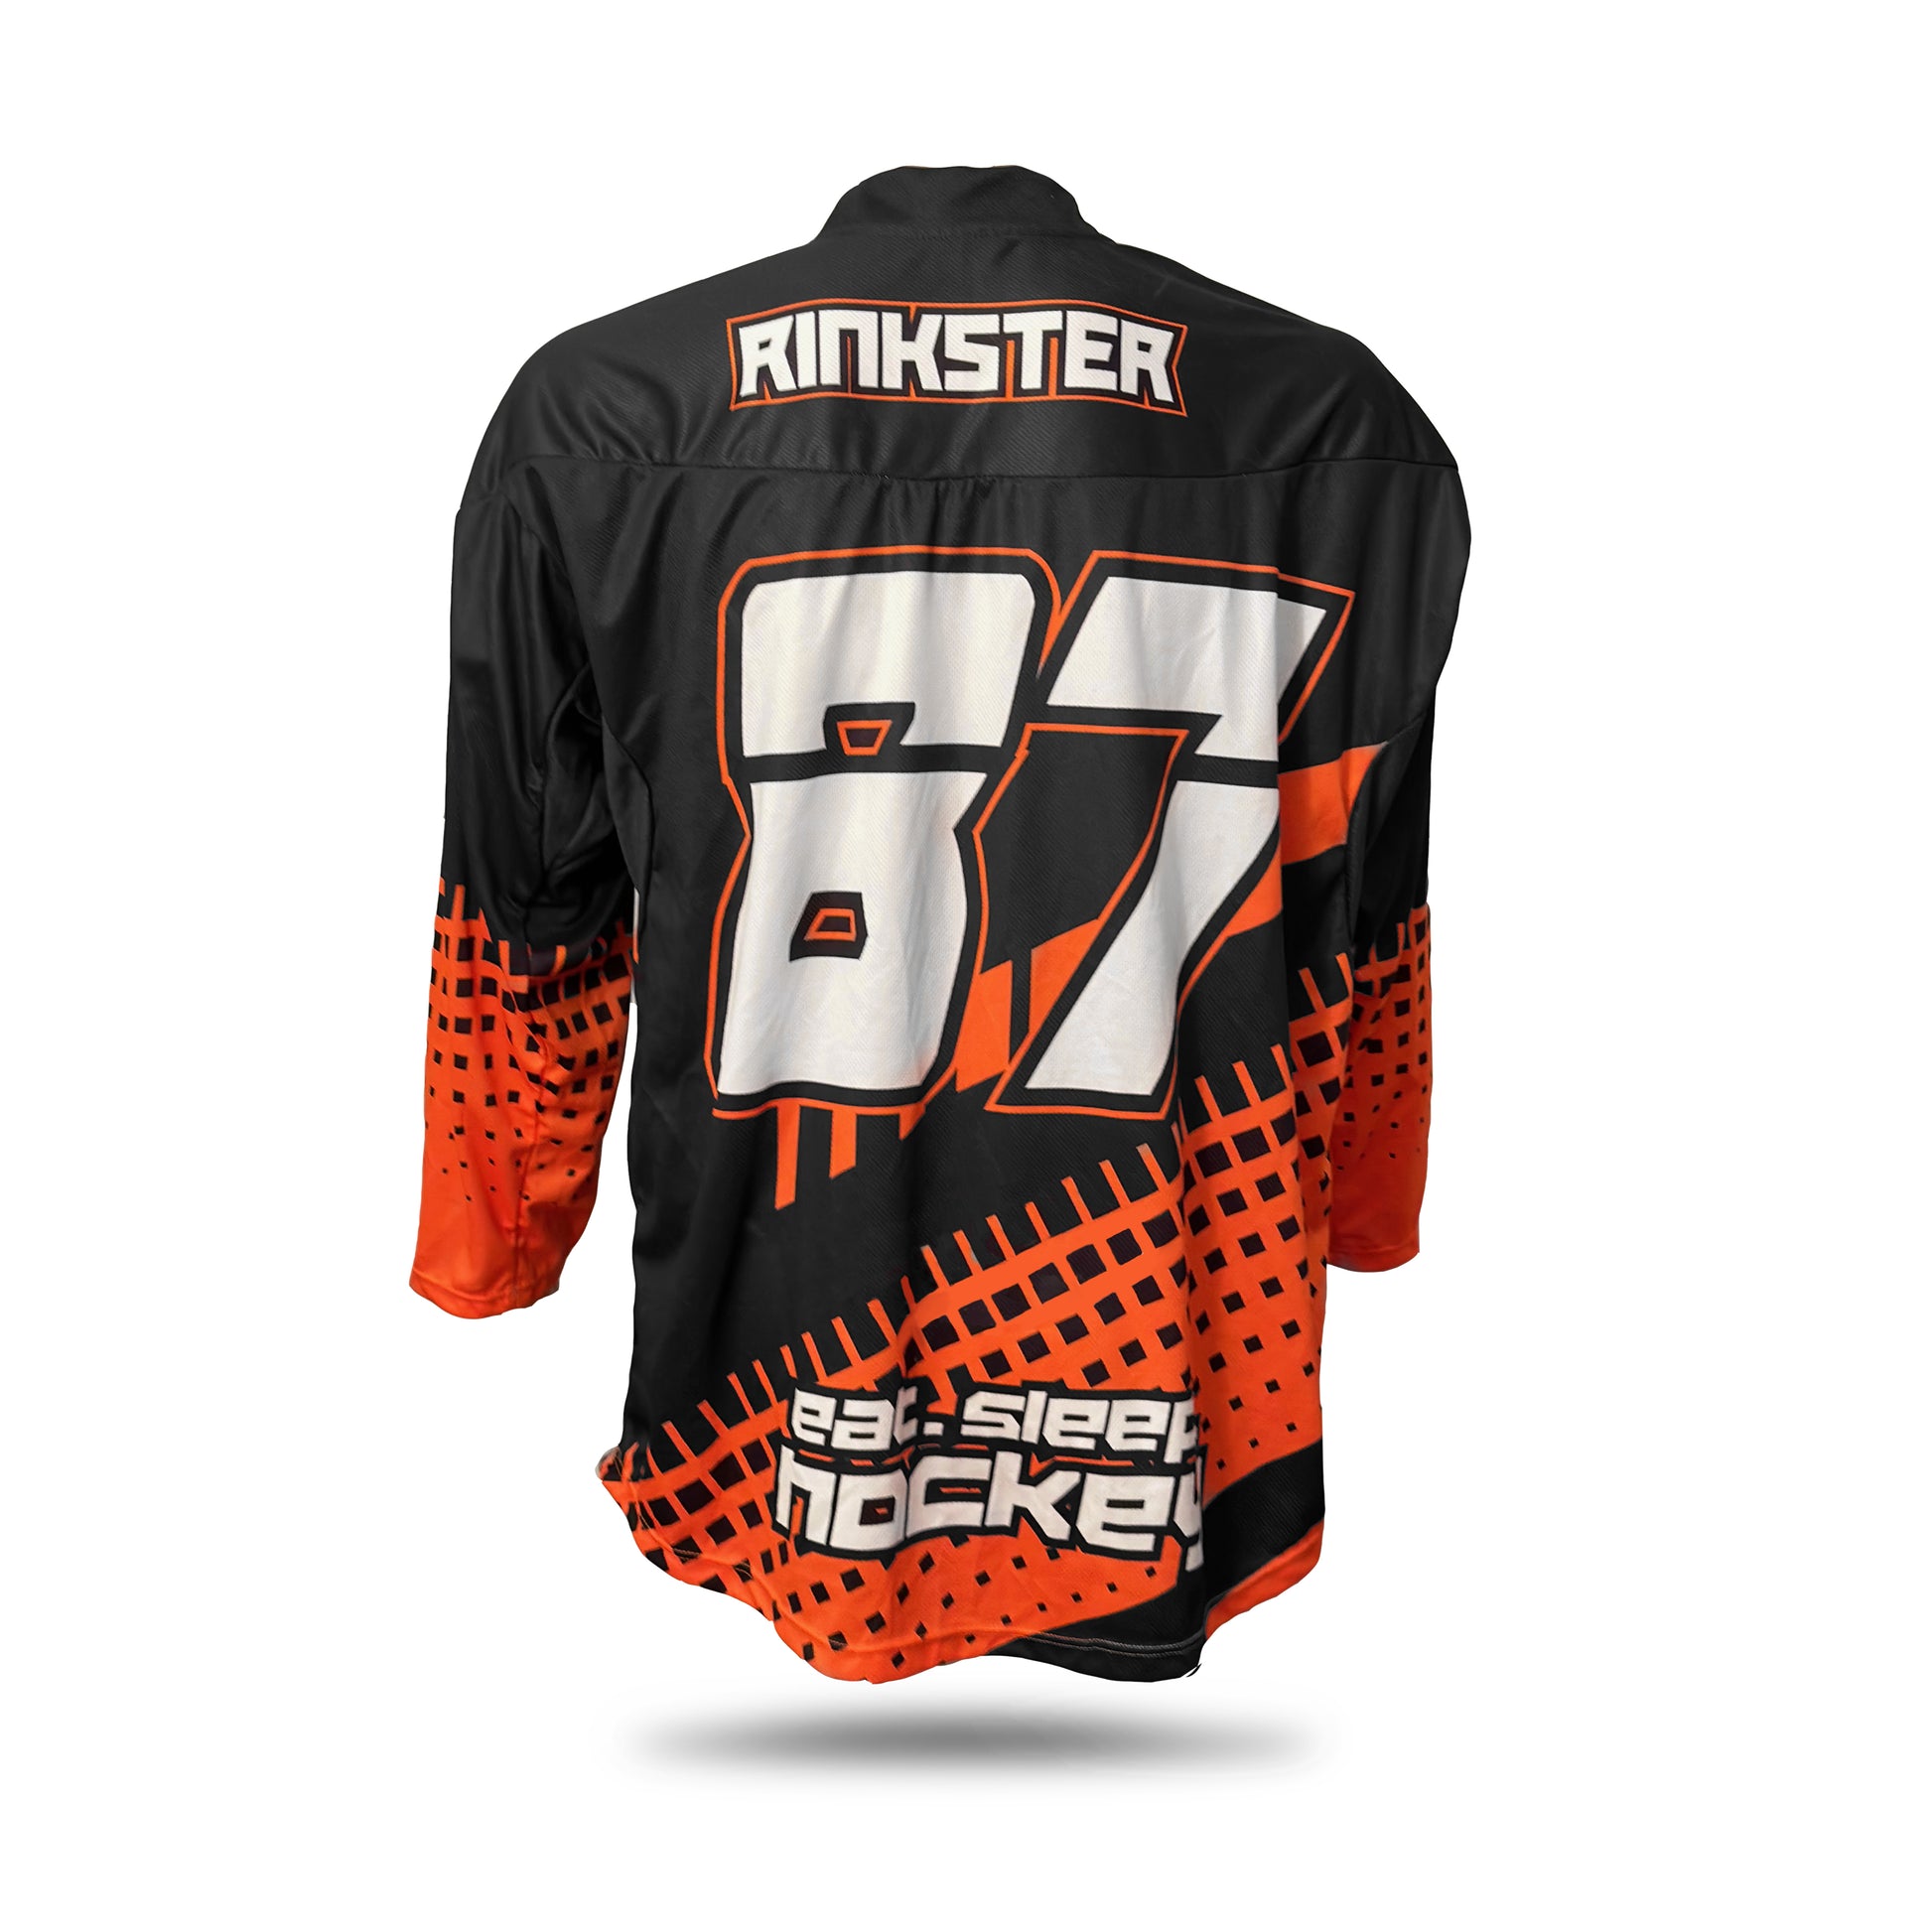 Rinkster Pro Team Roller Hockey Jersey | Roller Hockey Jerseys | Rinkster SR XL